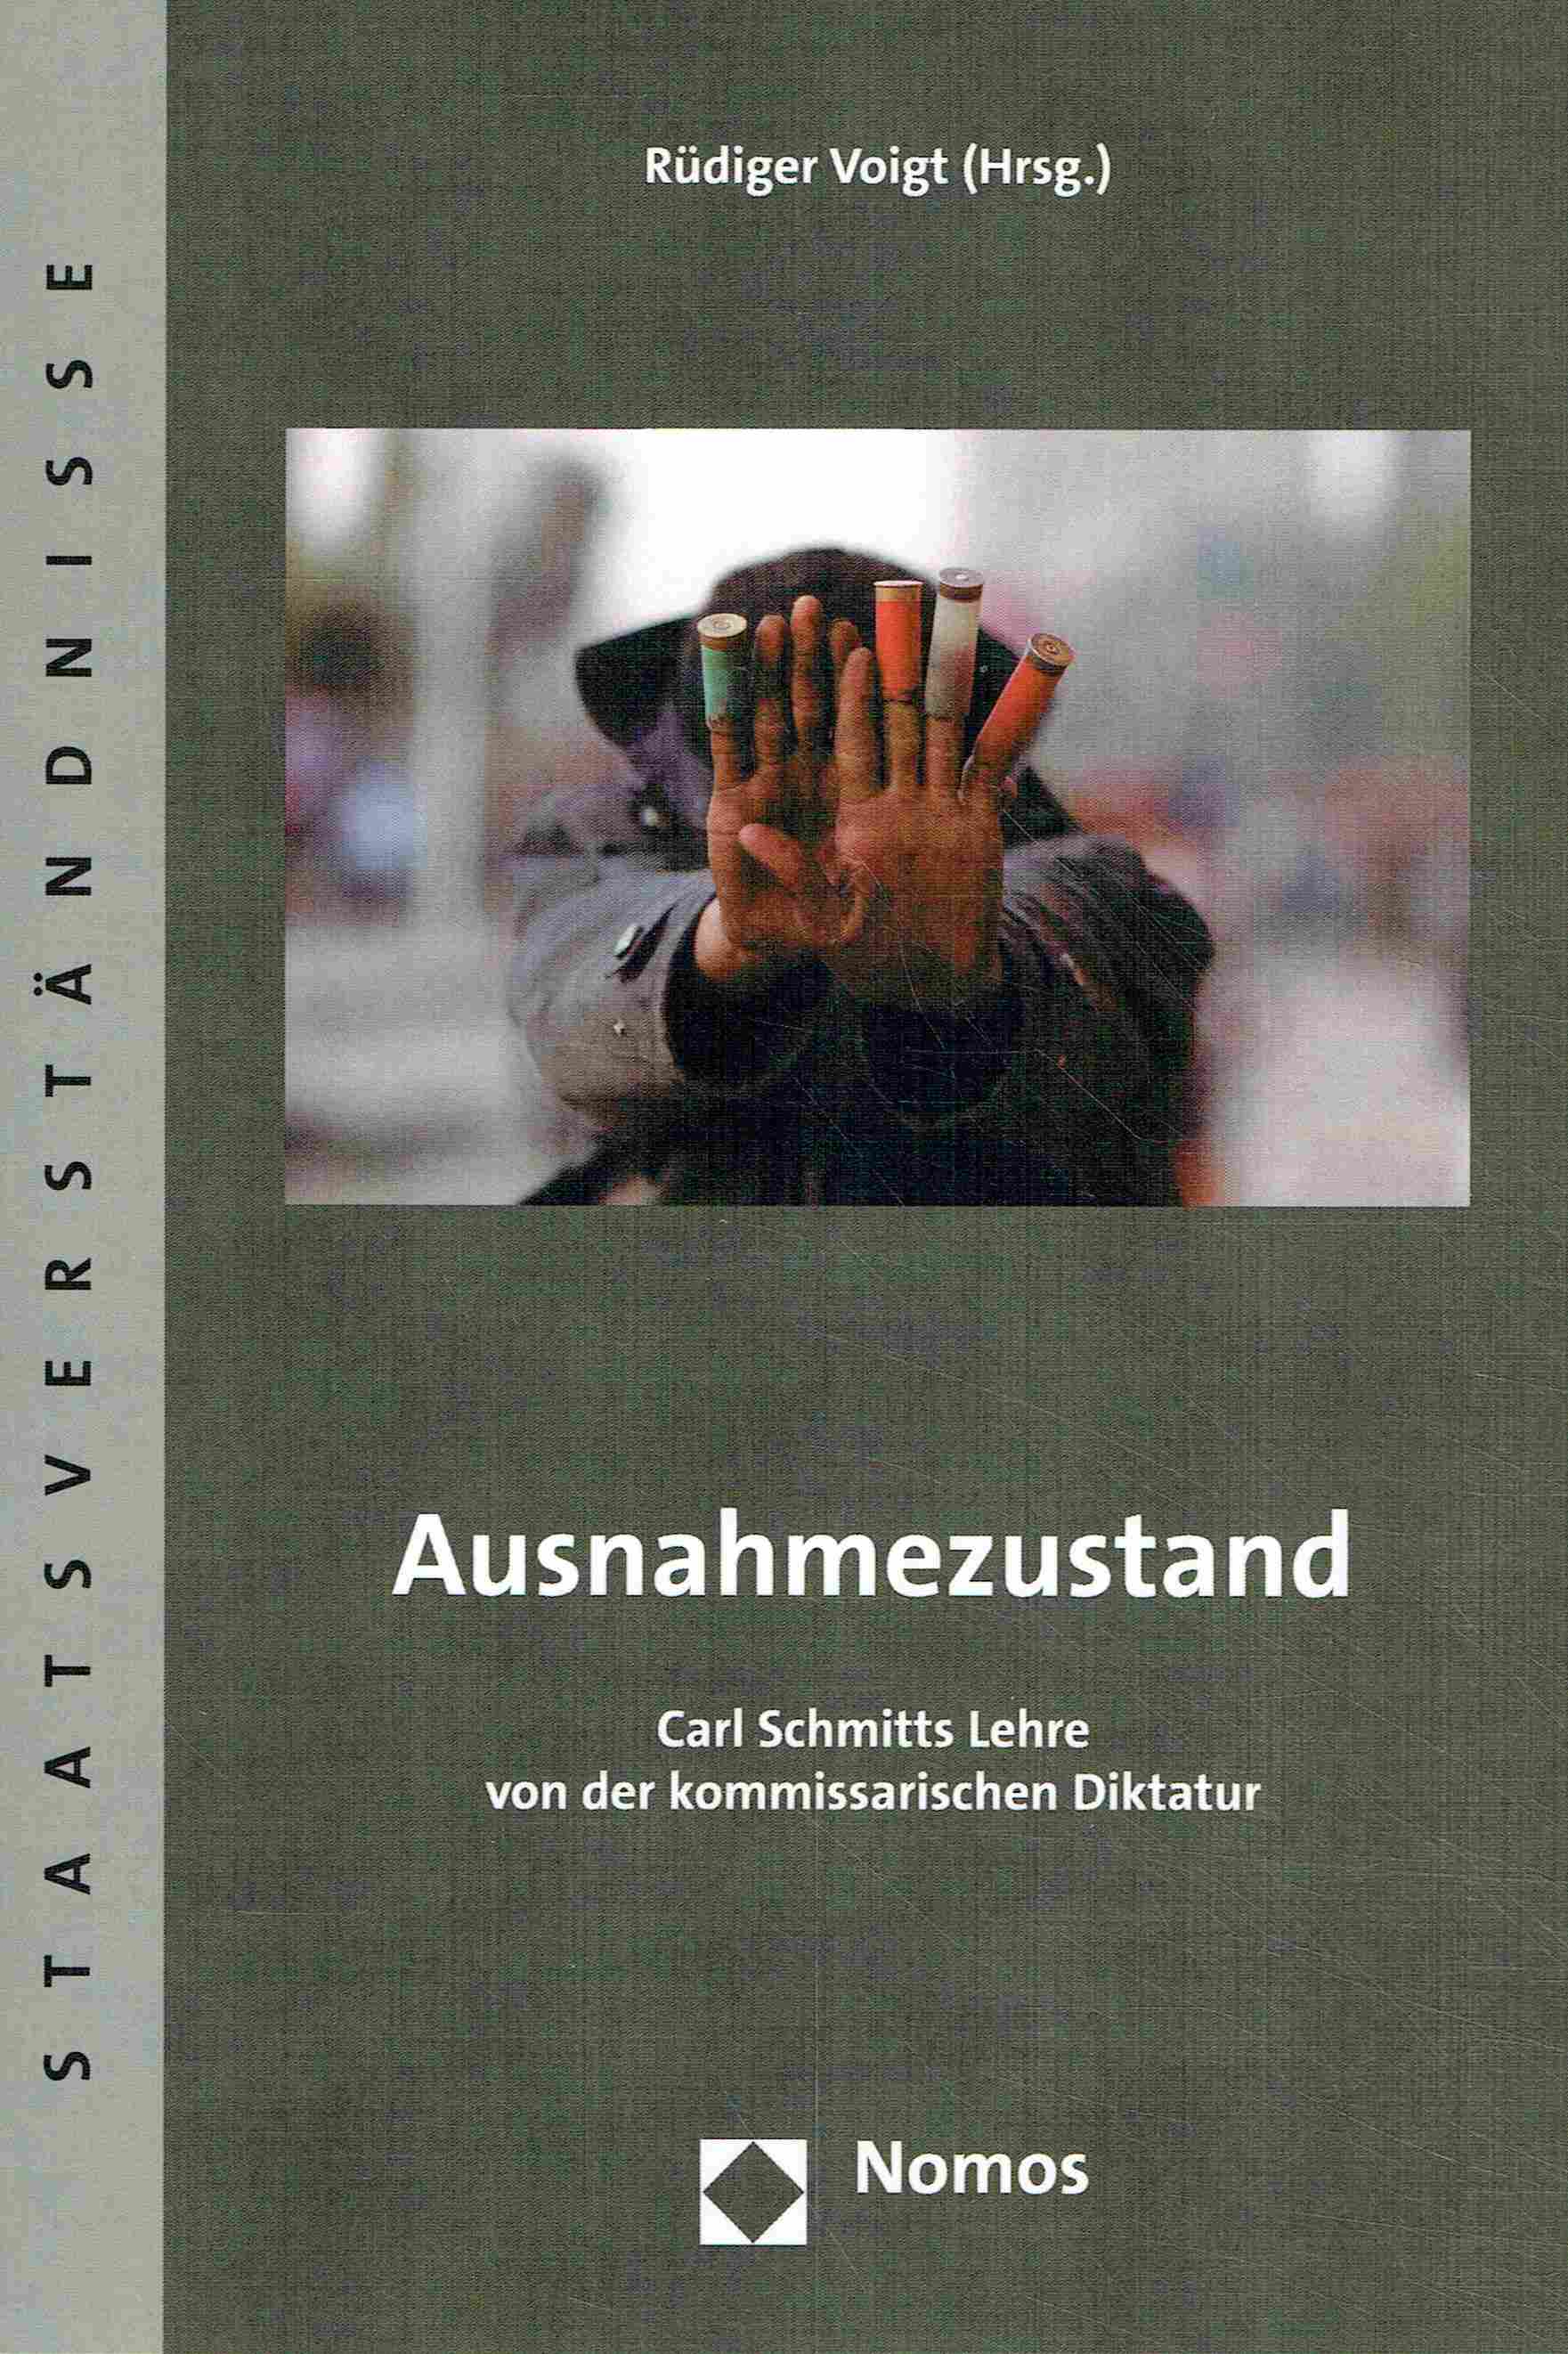 Ausnahmezustand: Carl Schmitts Lehre von der kommissarischen Diktatur. (Staatsverstandnisse, Band 57). - Voigt, Rüdiger (Hrsg.)